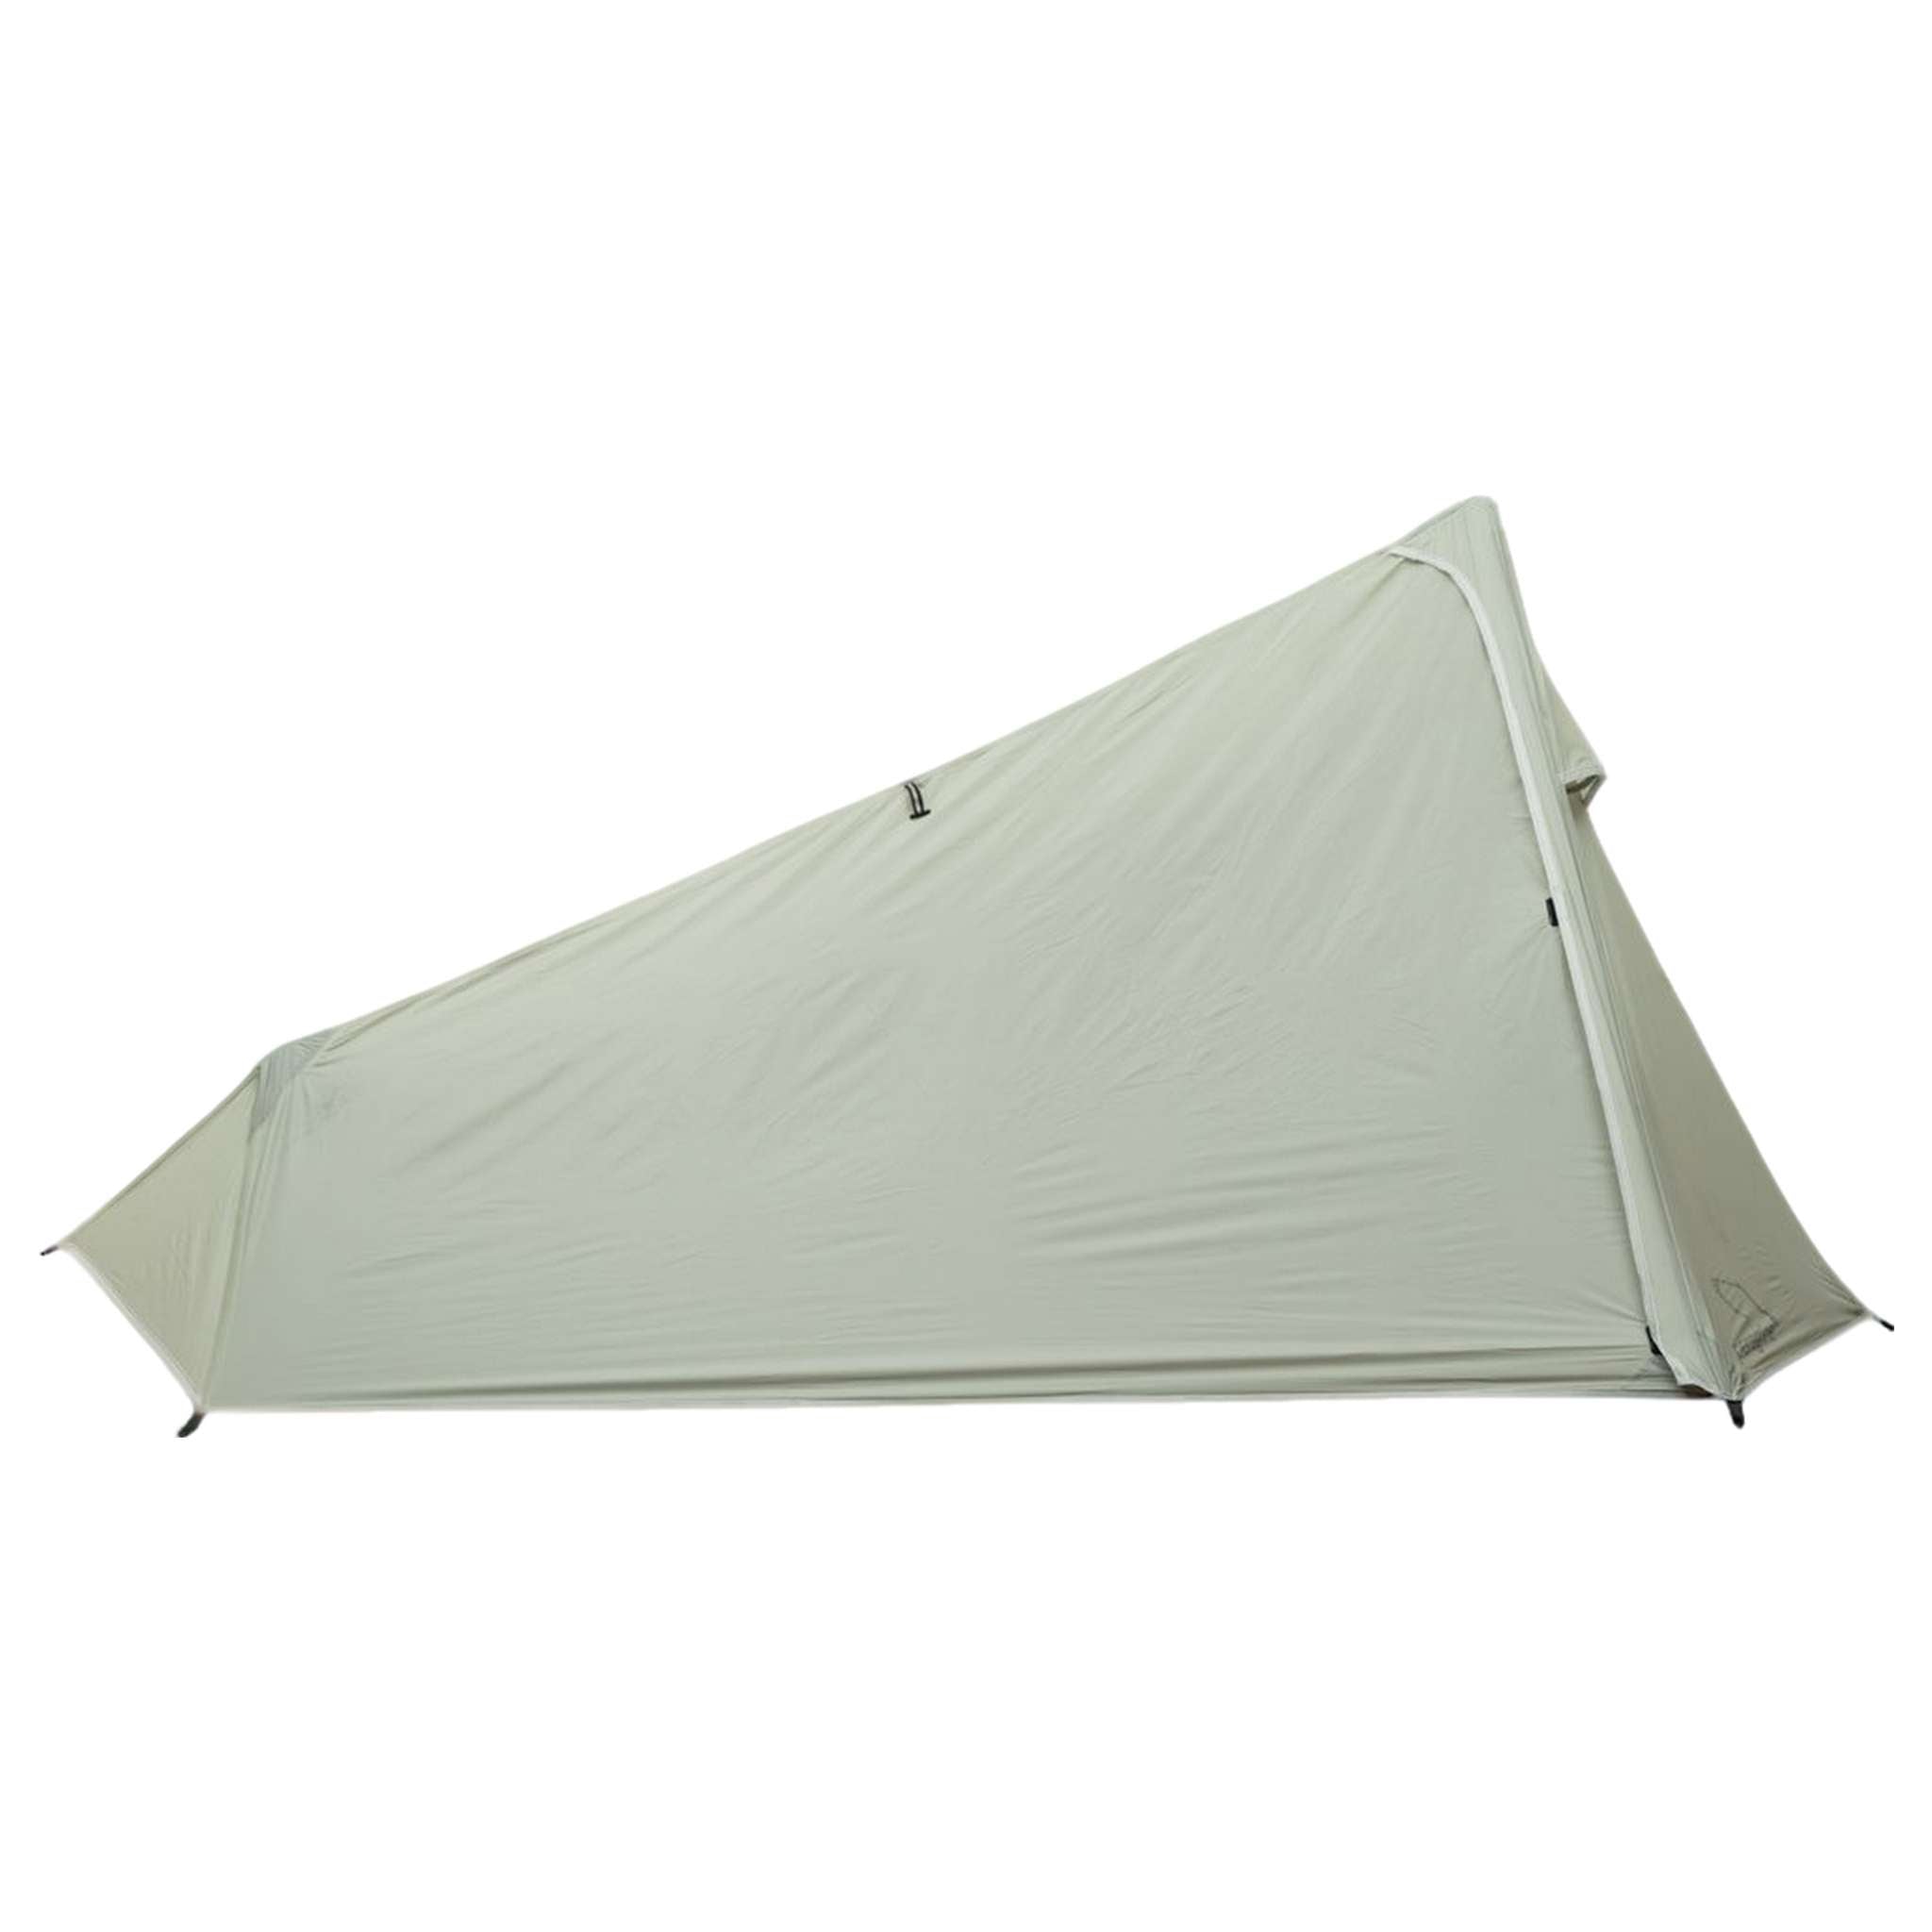 TERN UL 1 - Ultralight Single-Person Trekking Pole Tent